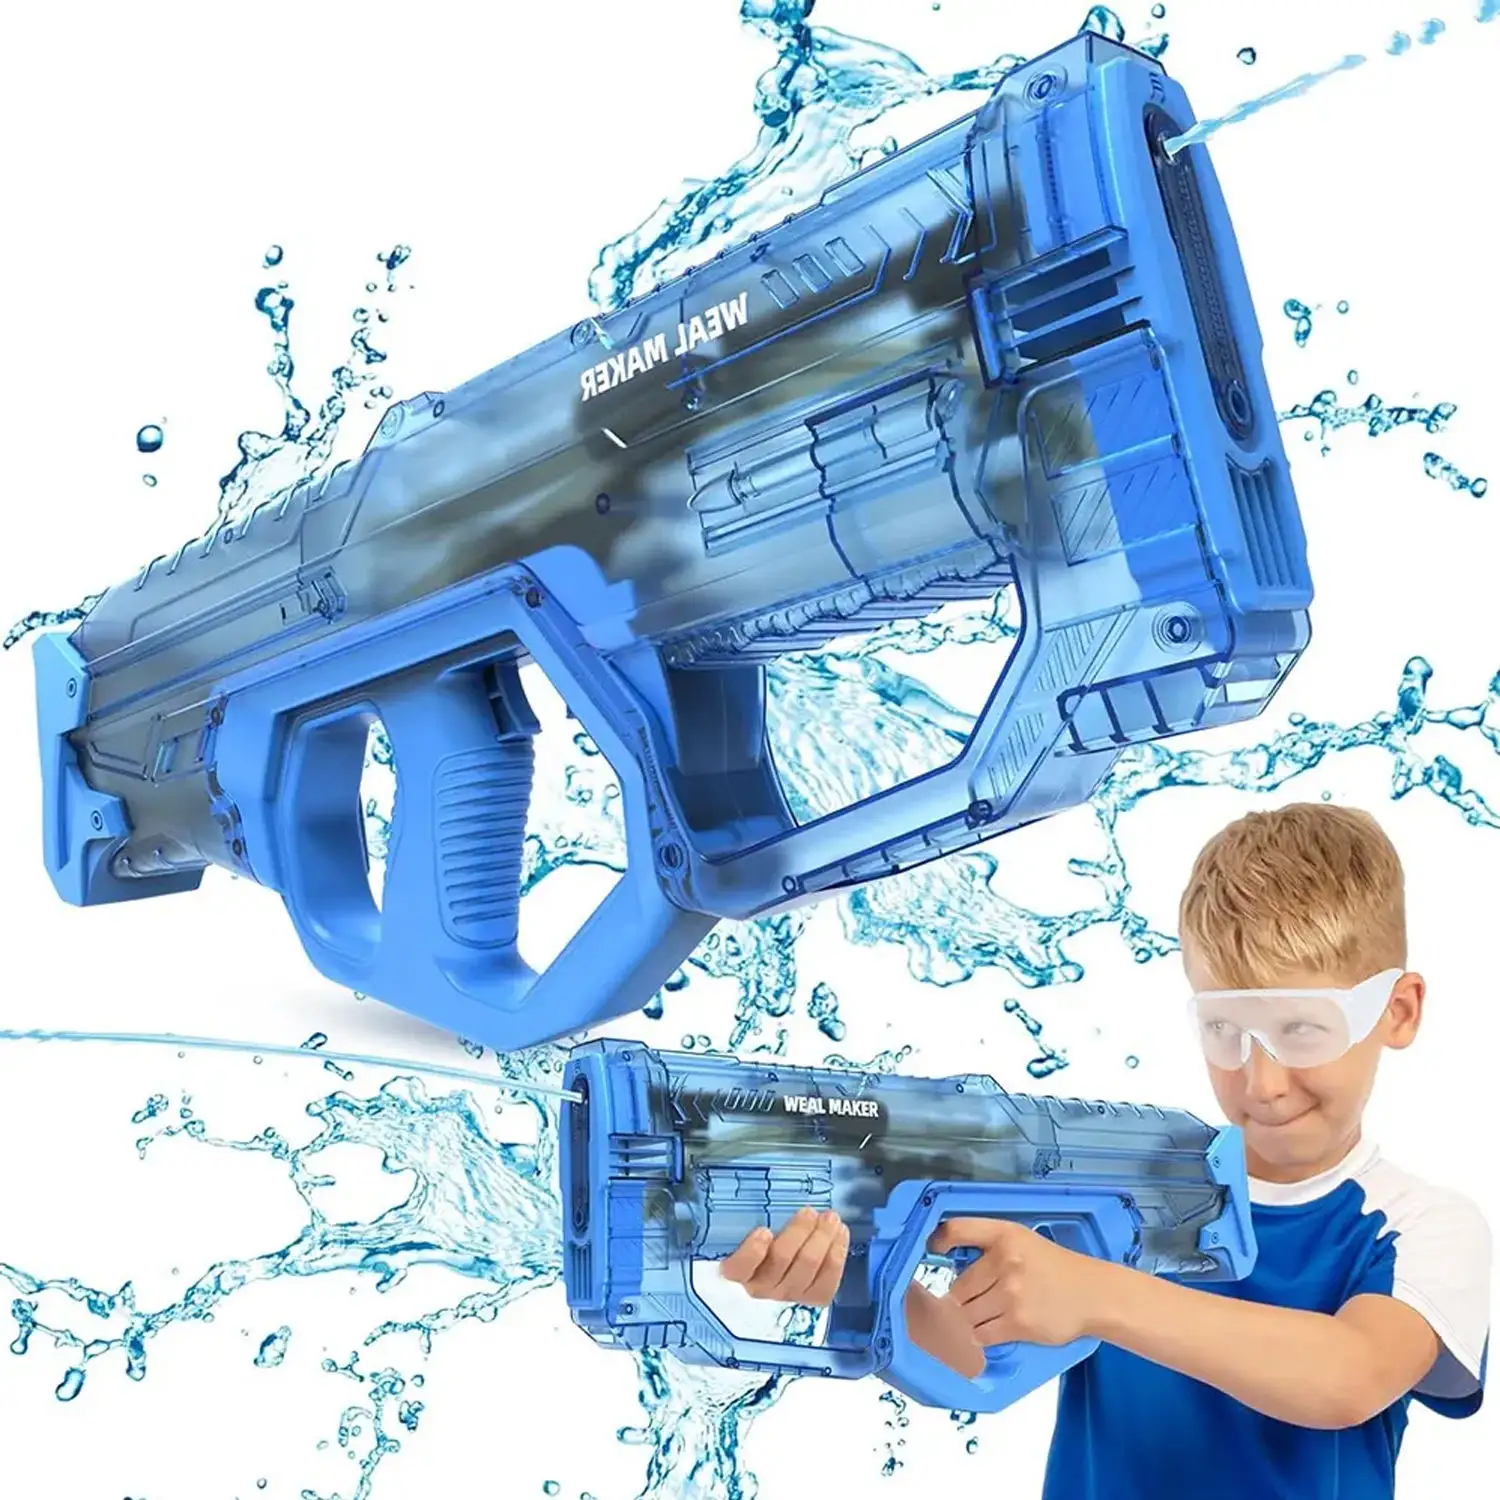 Nuovo arrivo pistola giocattolo automatico trasparente all'aperto estate per bambini adulti pistola ad acqua elettrica 33ft poligono di tiro